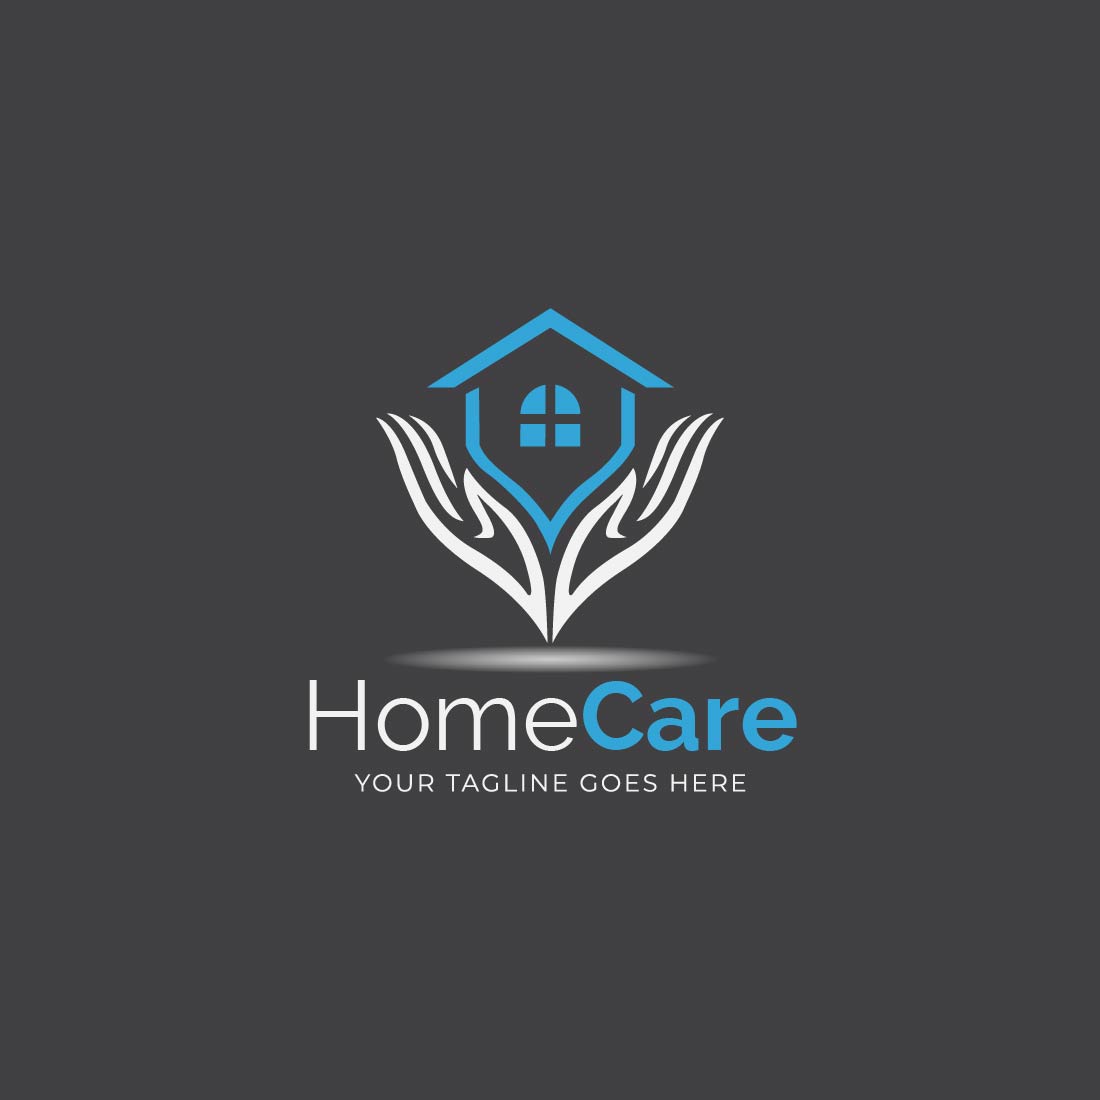 Home Care Logo Design preview image.